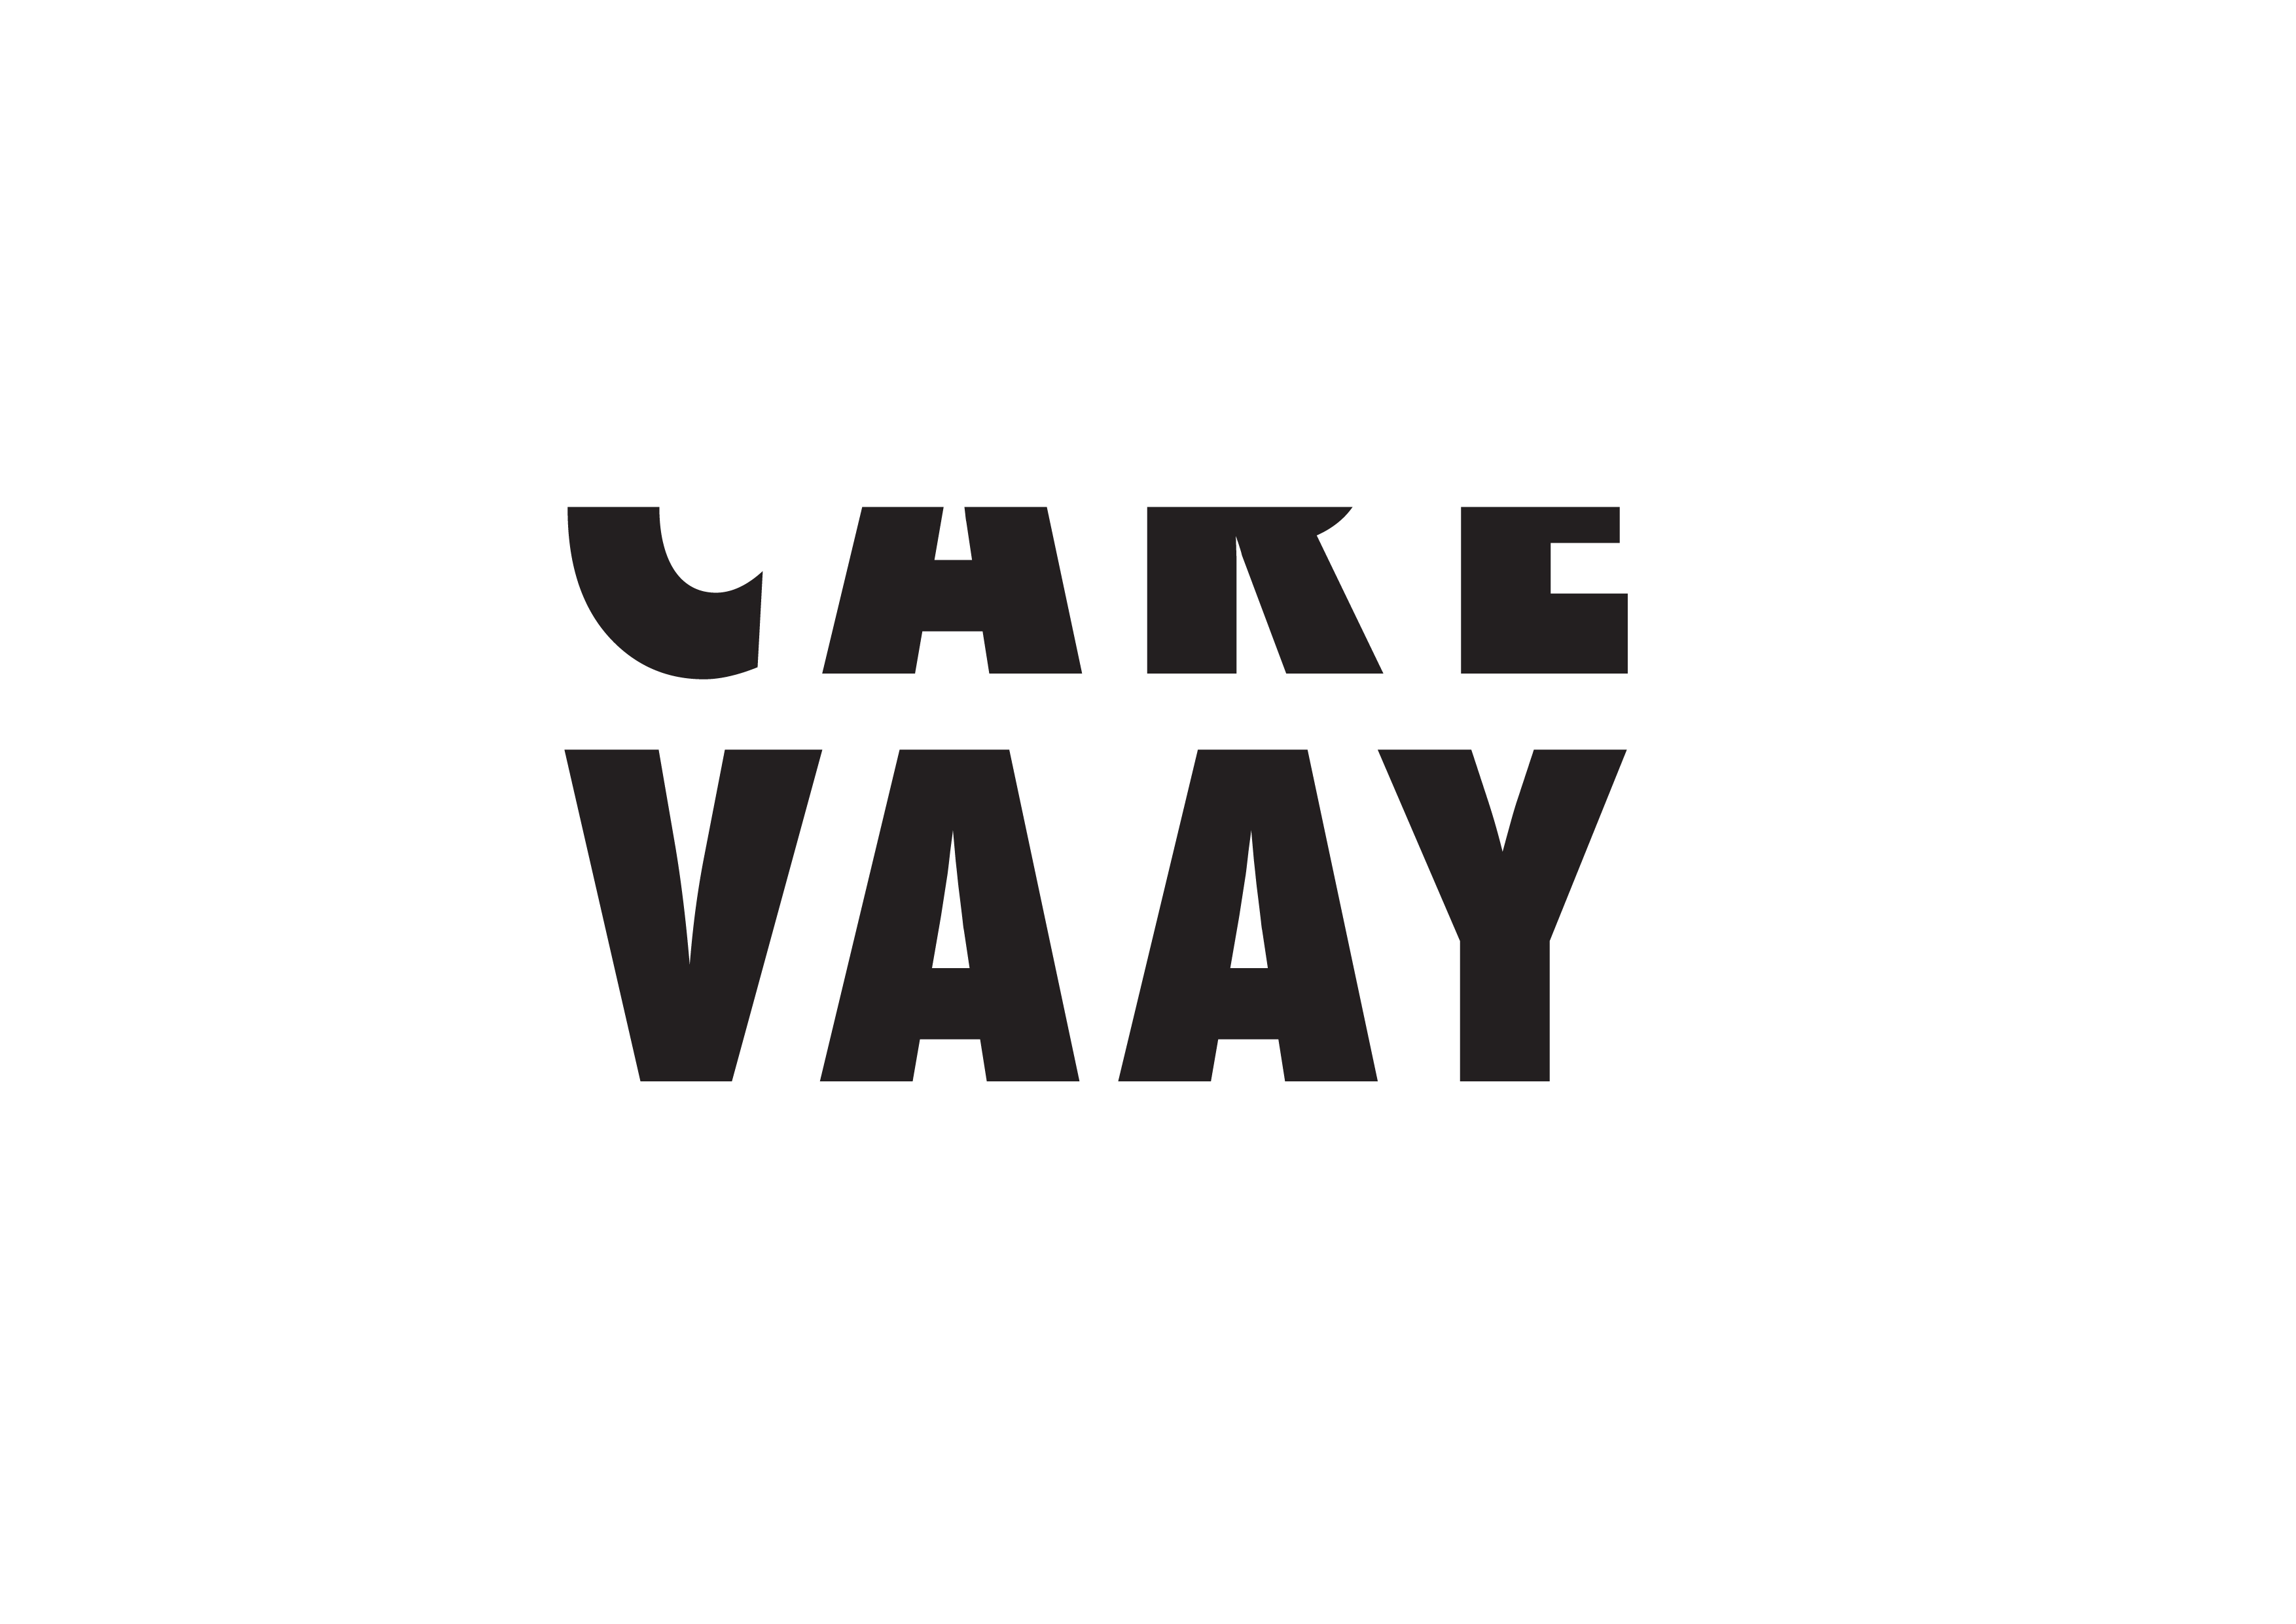 VAAY Logo